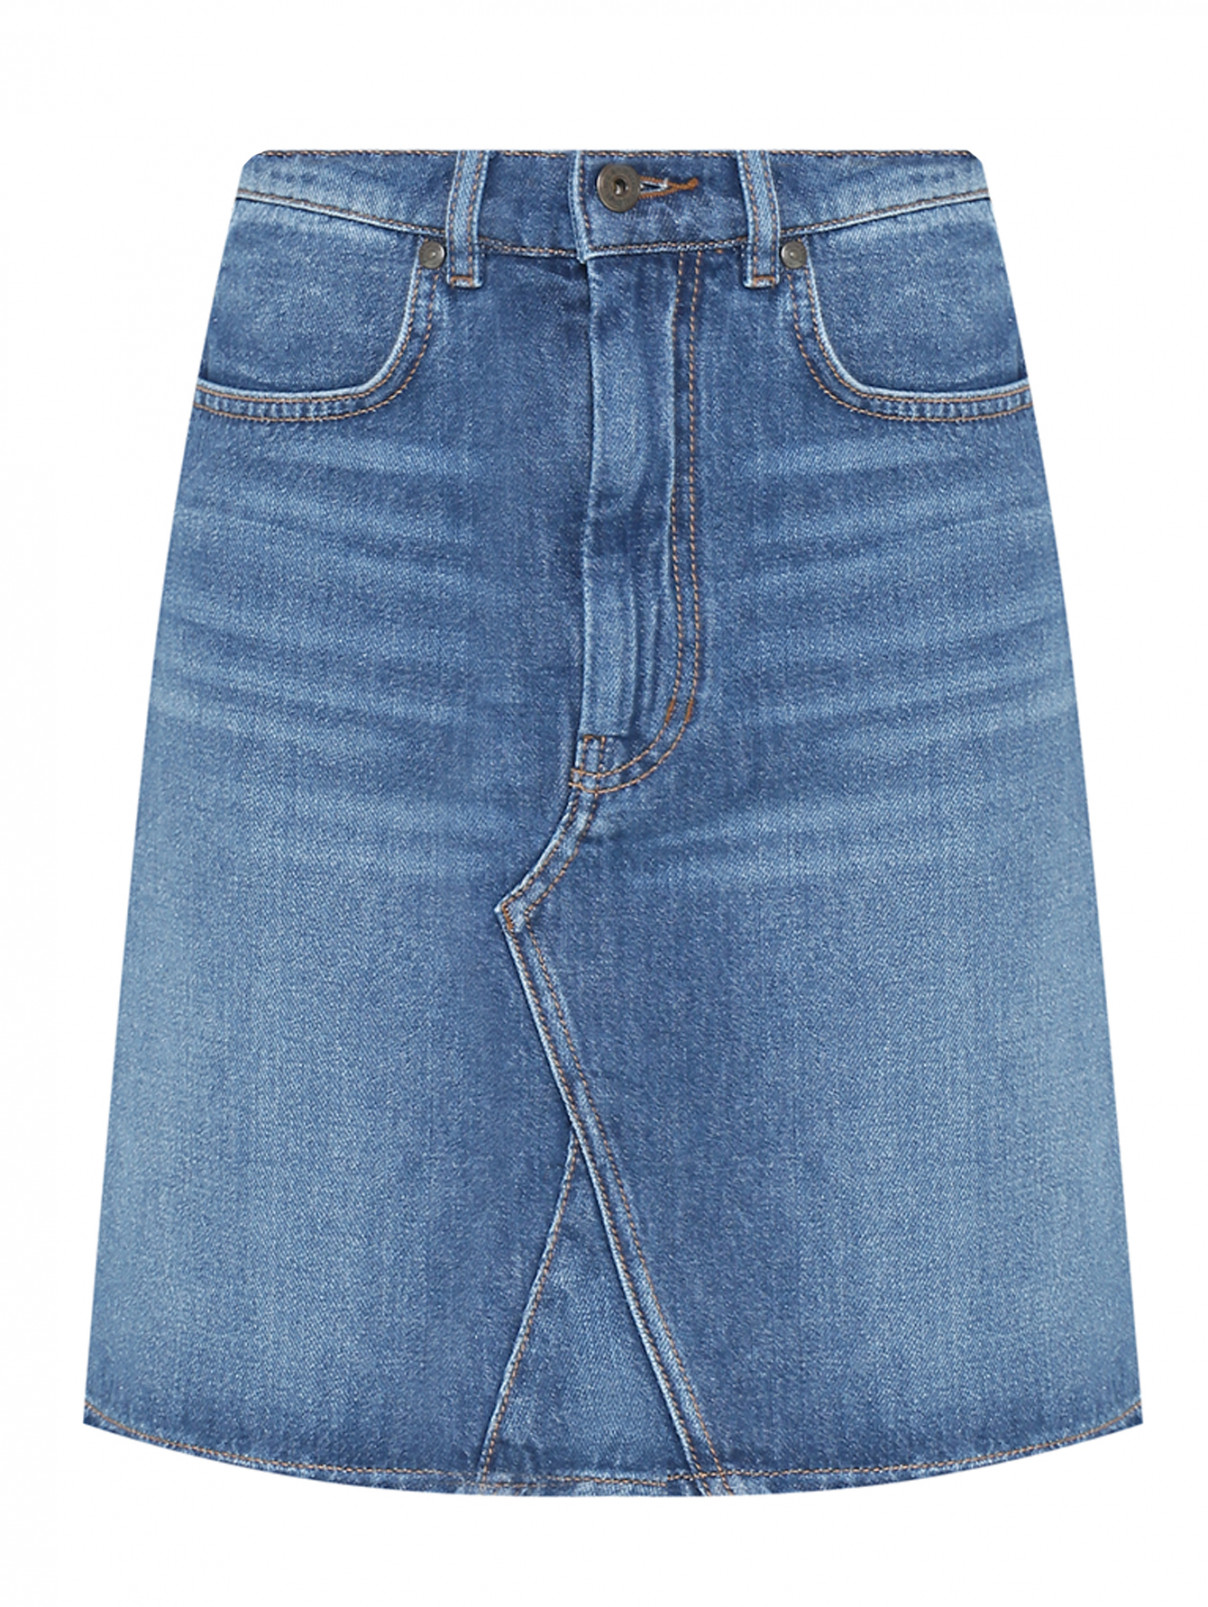 Джинсовая мини-юбка Weekend Max Mara  –  Общий вид  – Цвет:  Синий